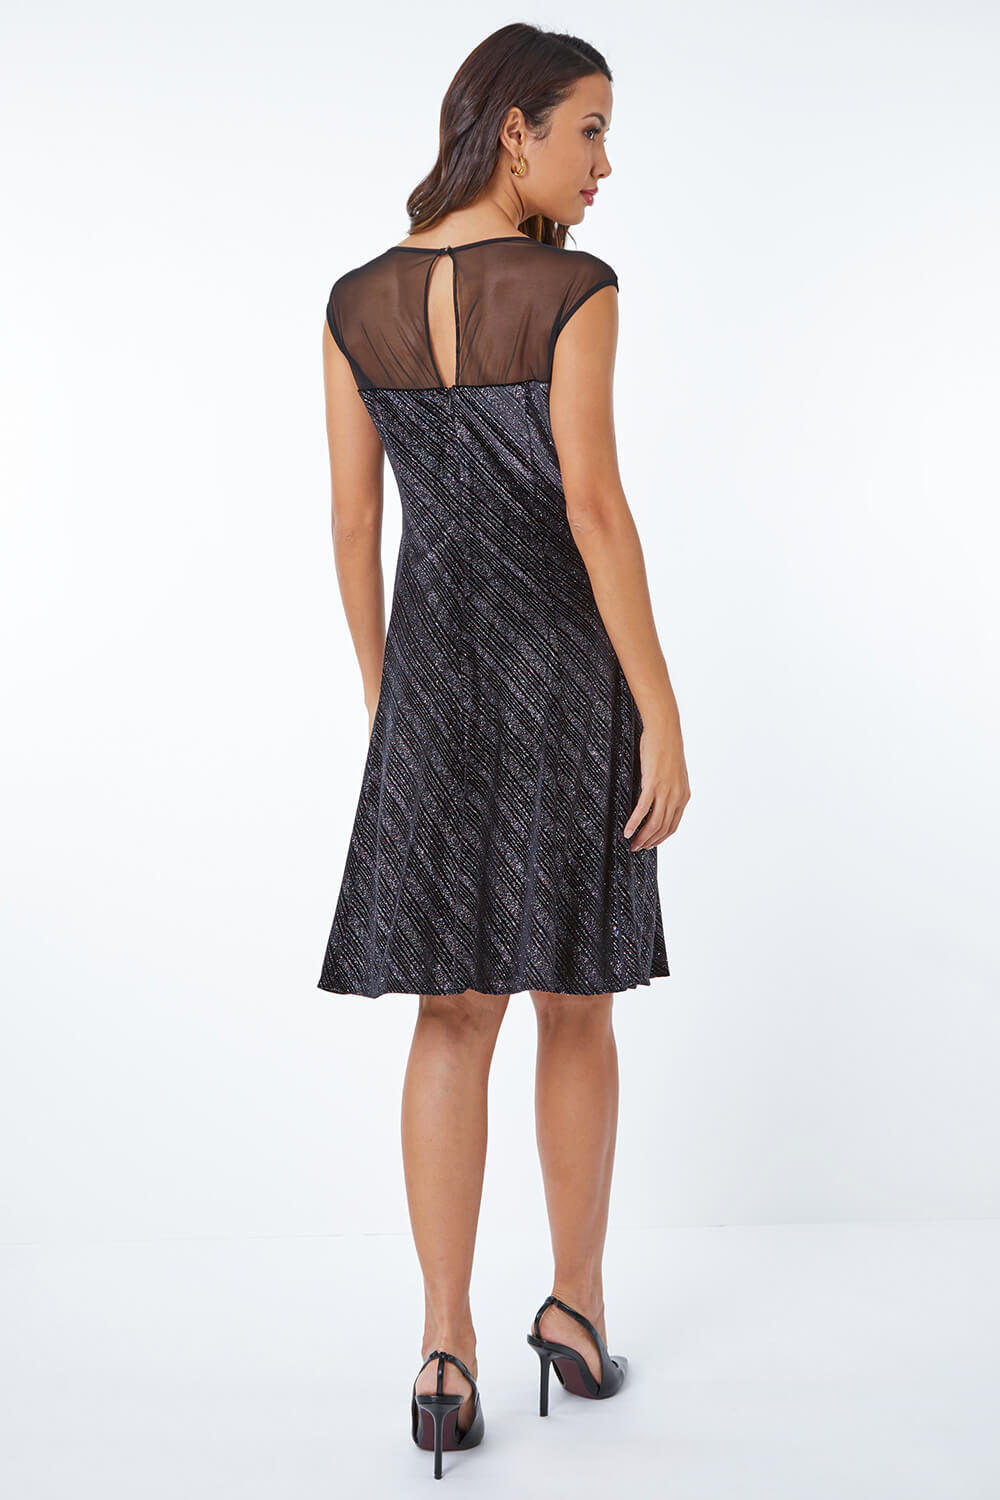 Black Shimmer Velvet Fit & Flare Dress, Image 3 of 5